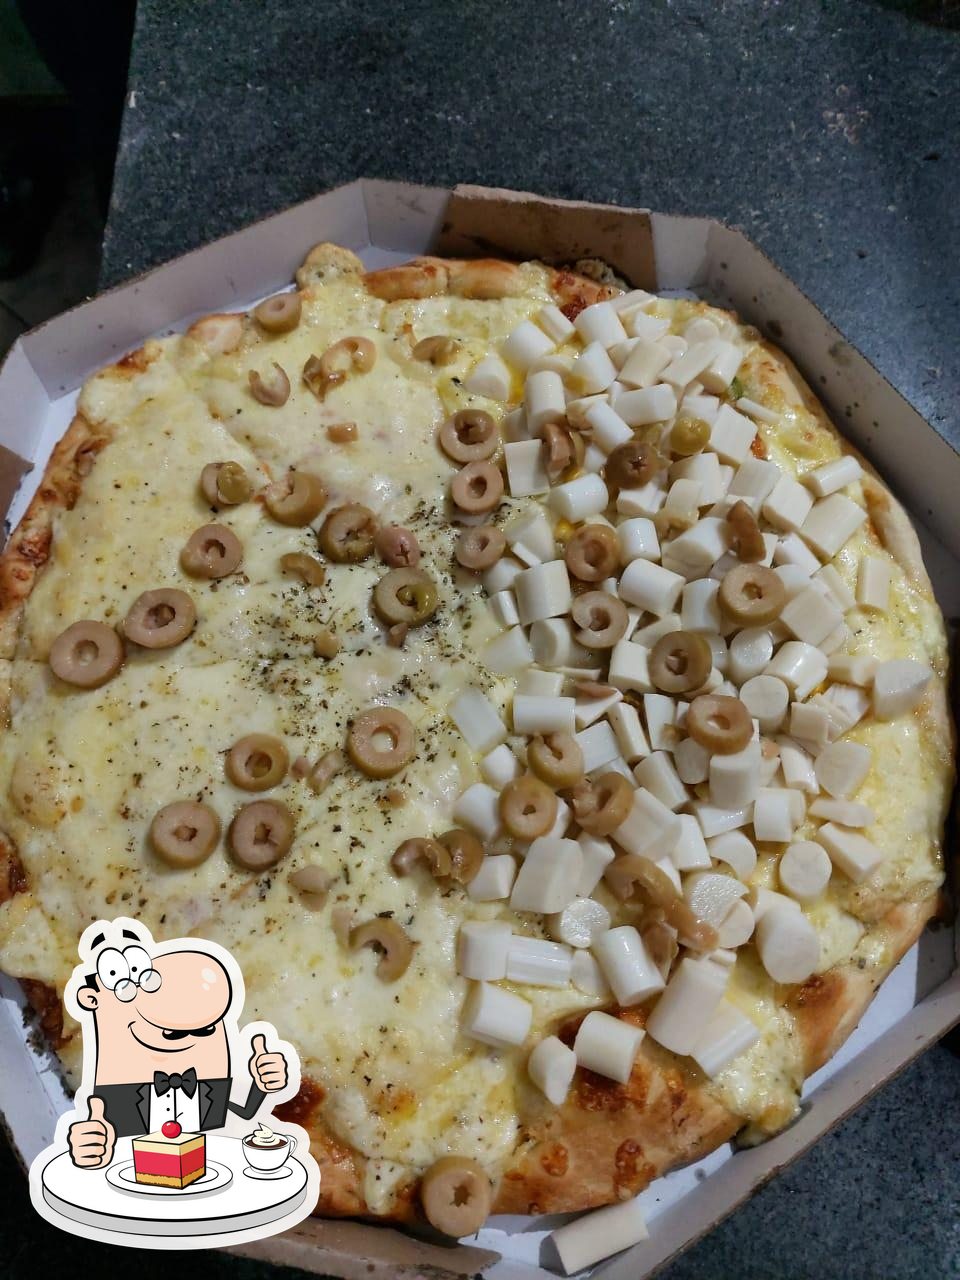 Tripify - Super Pizza, Morrinhos